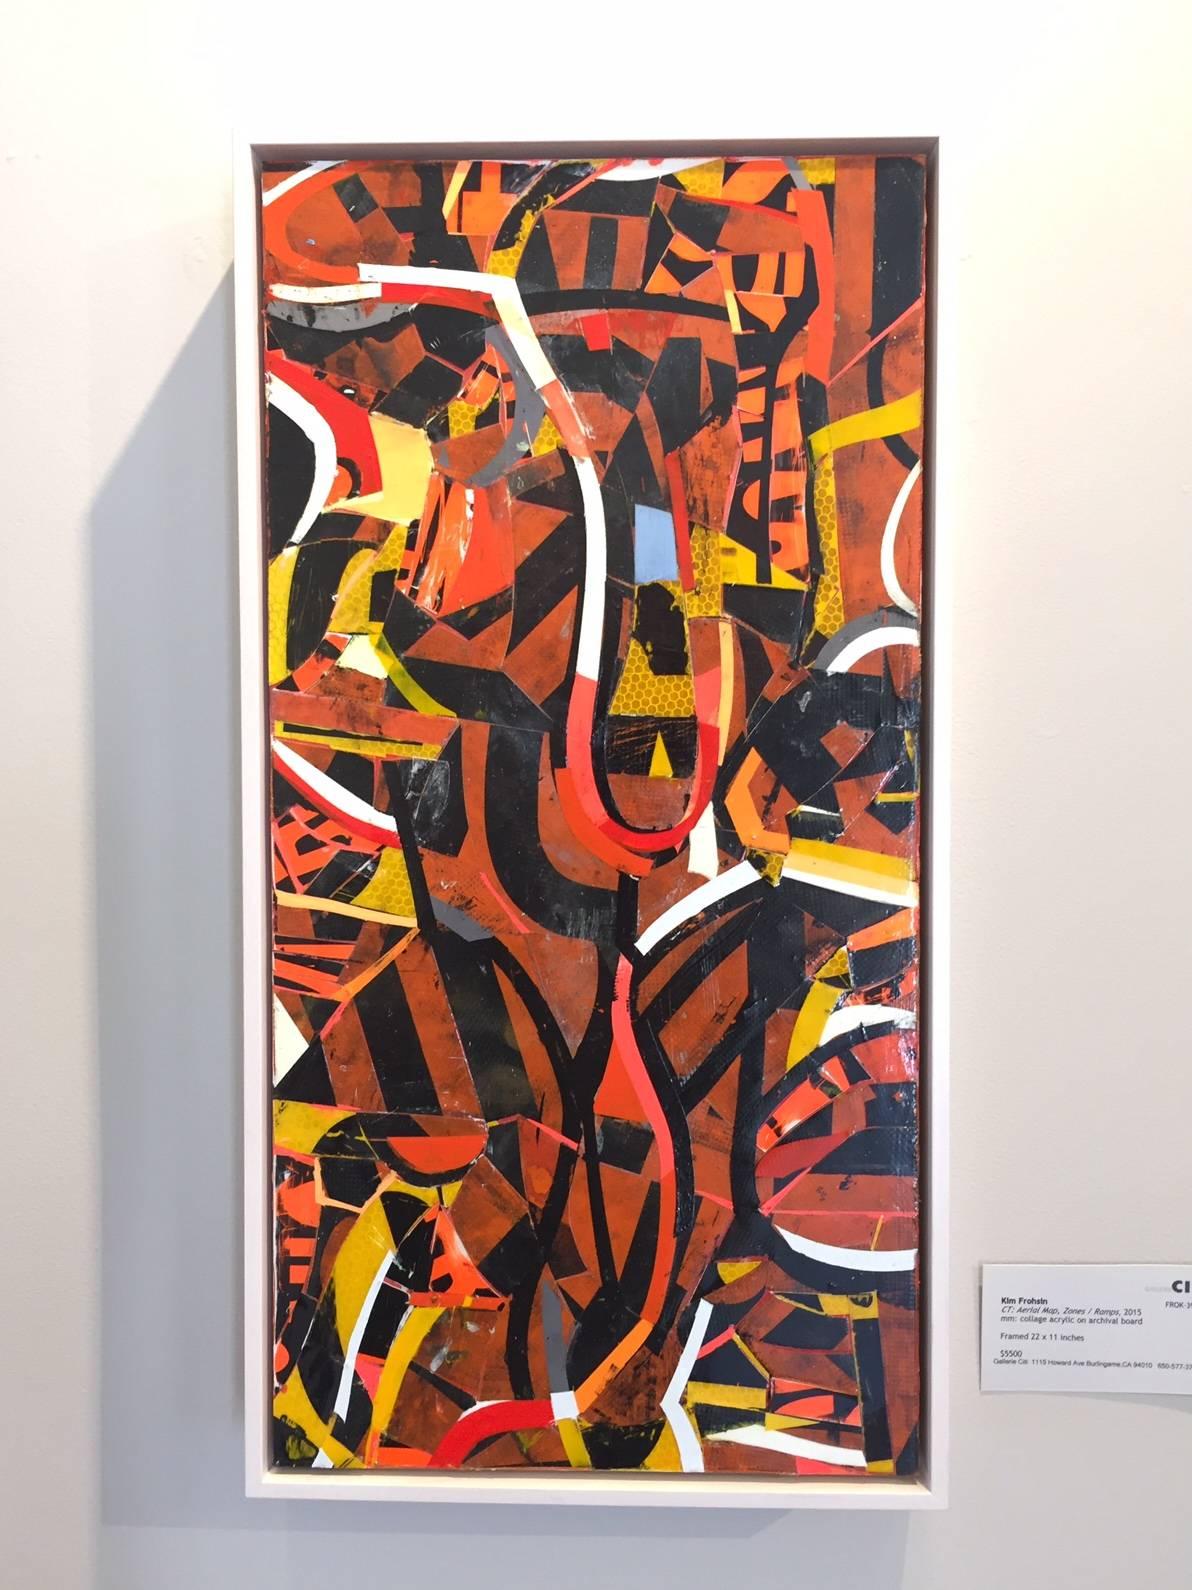 Luftbildkarte, Zonen / Widderhänge (Abstrakter Expressionismus), Painting, von Kim Frohsin